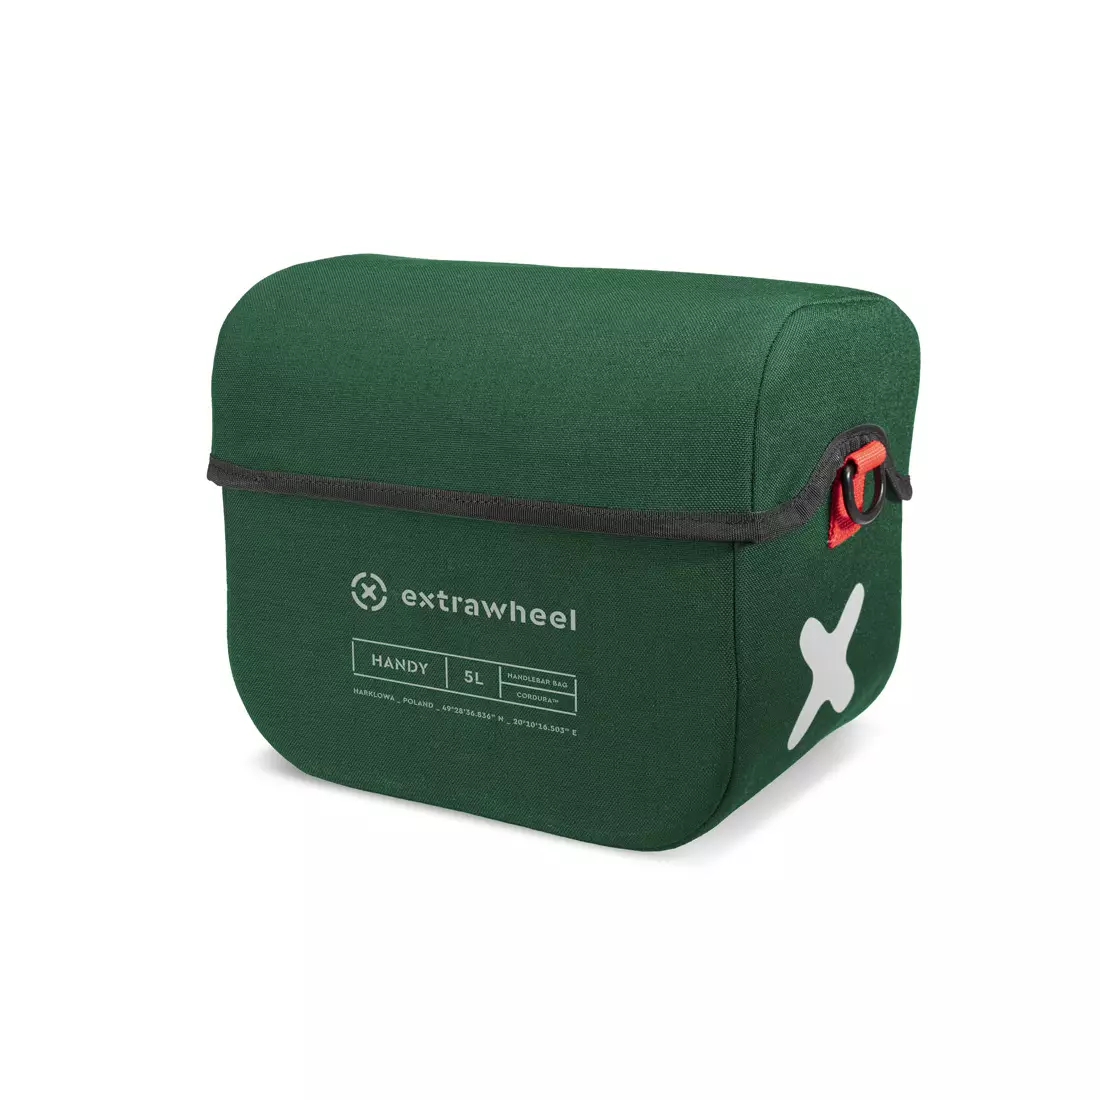 EXTRAWHEEL HANDY PREMIUM CORDURA geanta pentru ghidon, verde 5 L